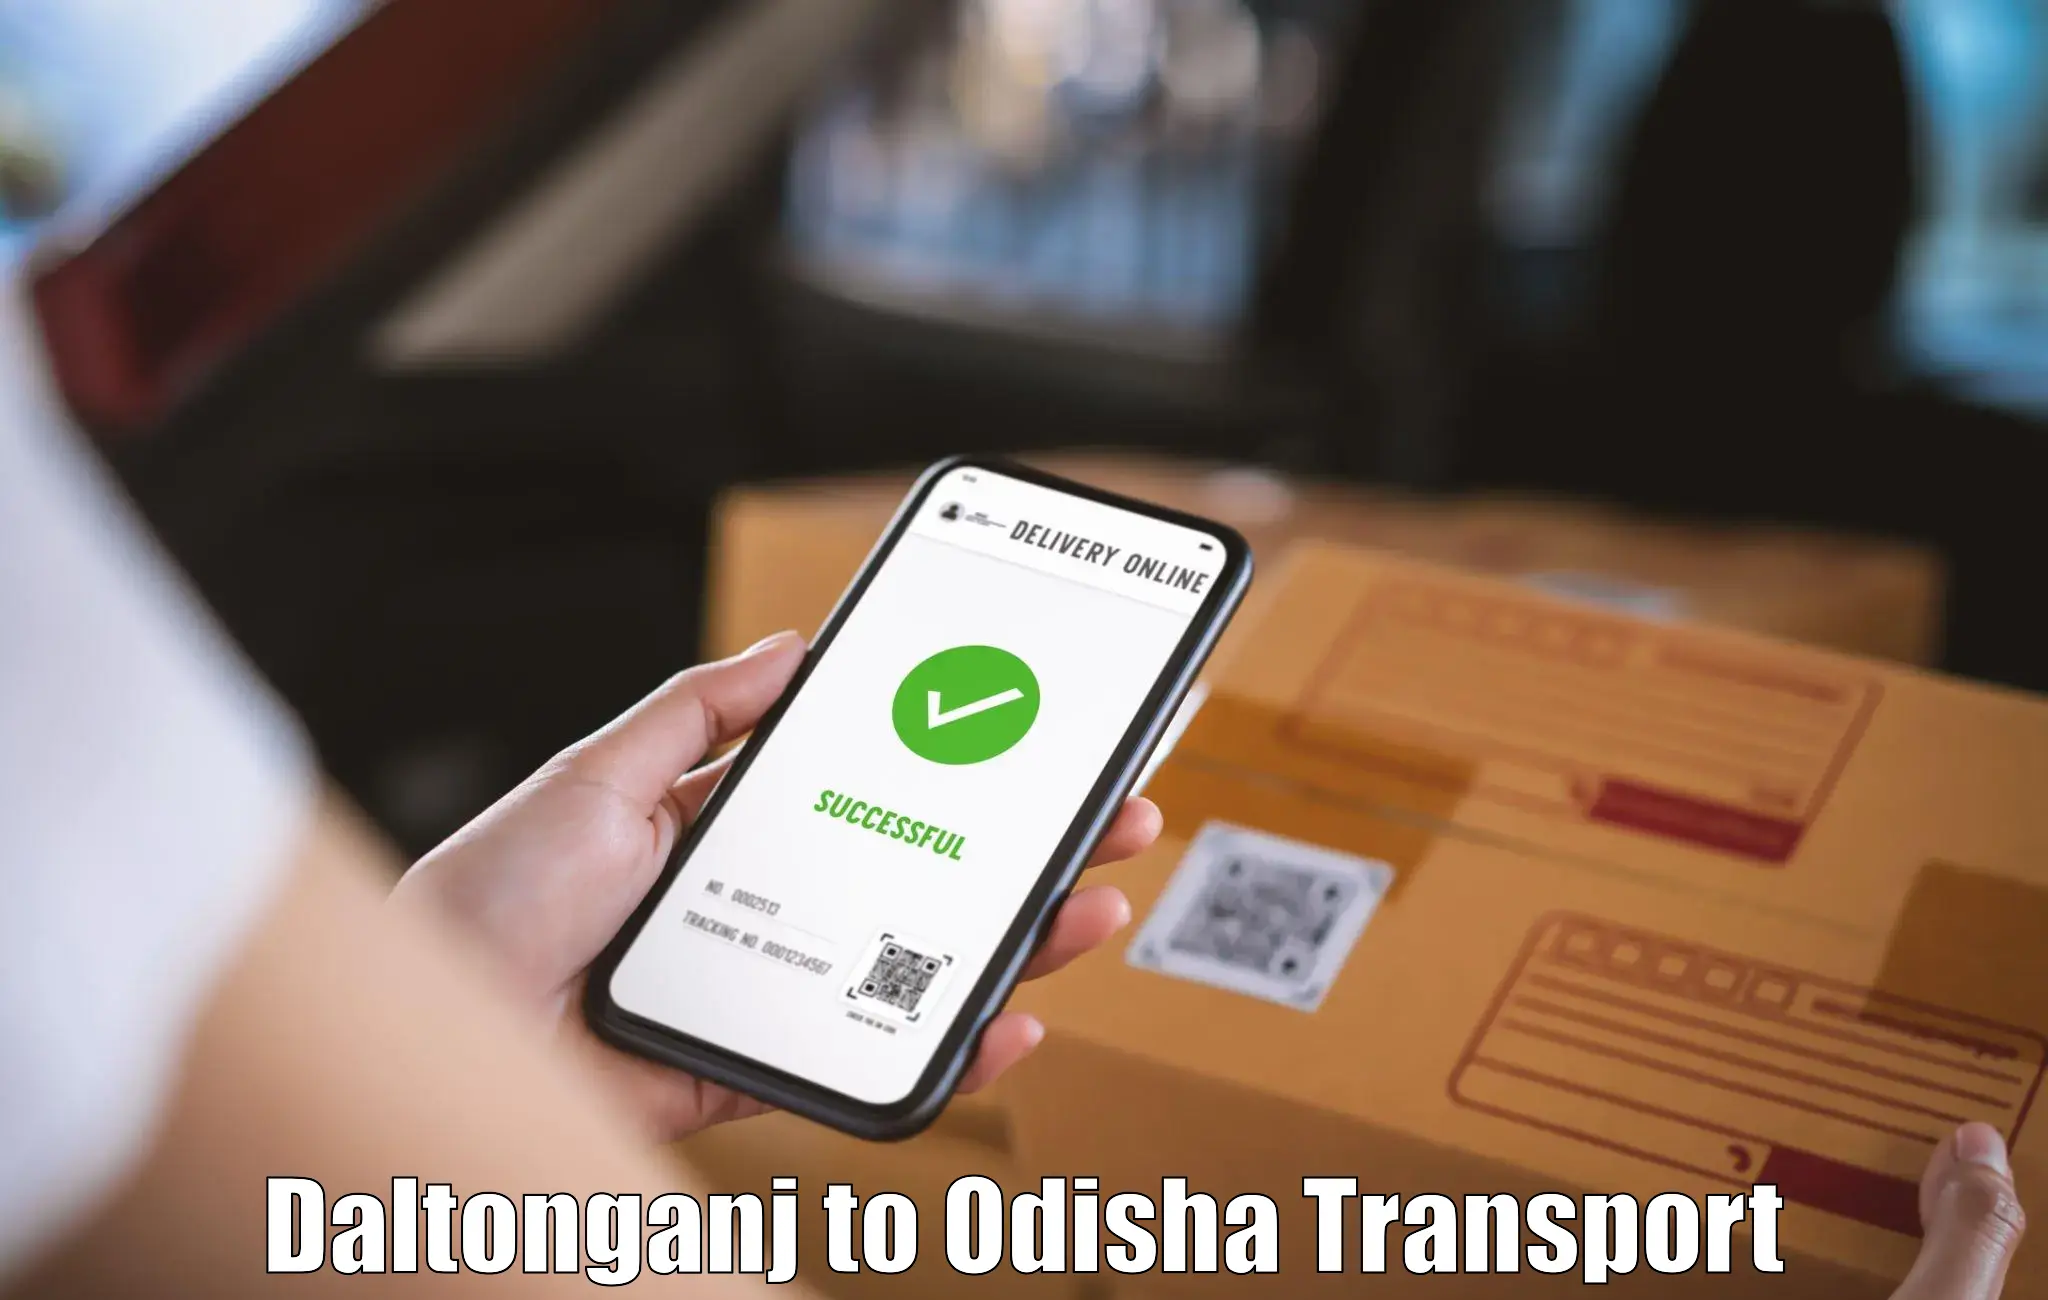 Vehicle parcel service Daltonganj to Babujang